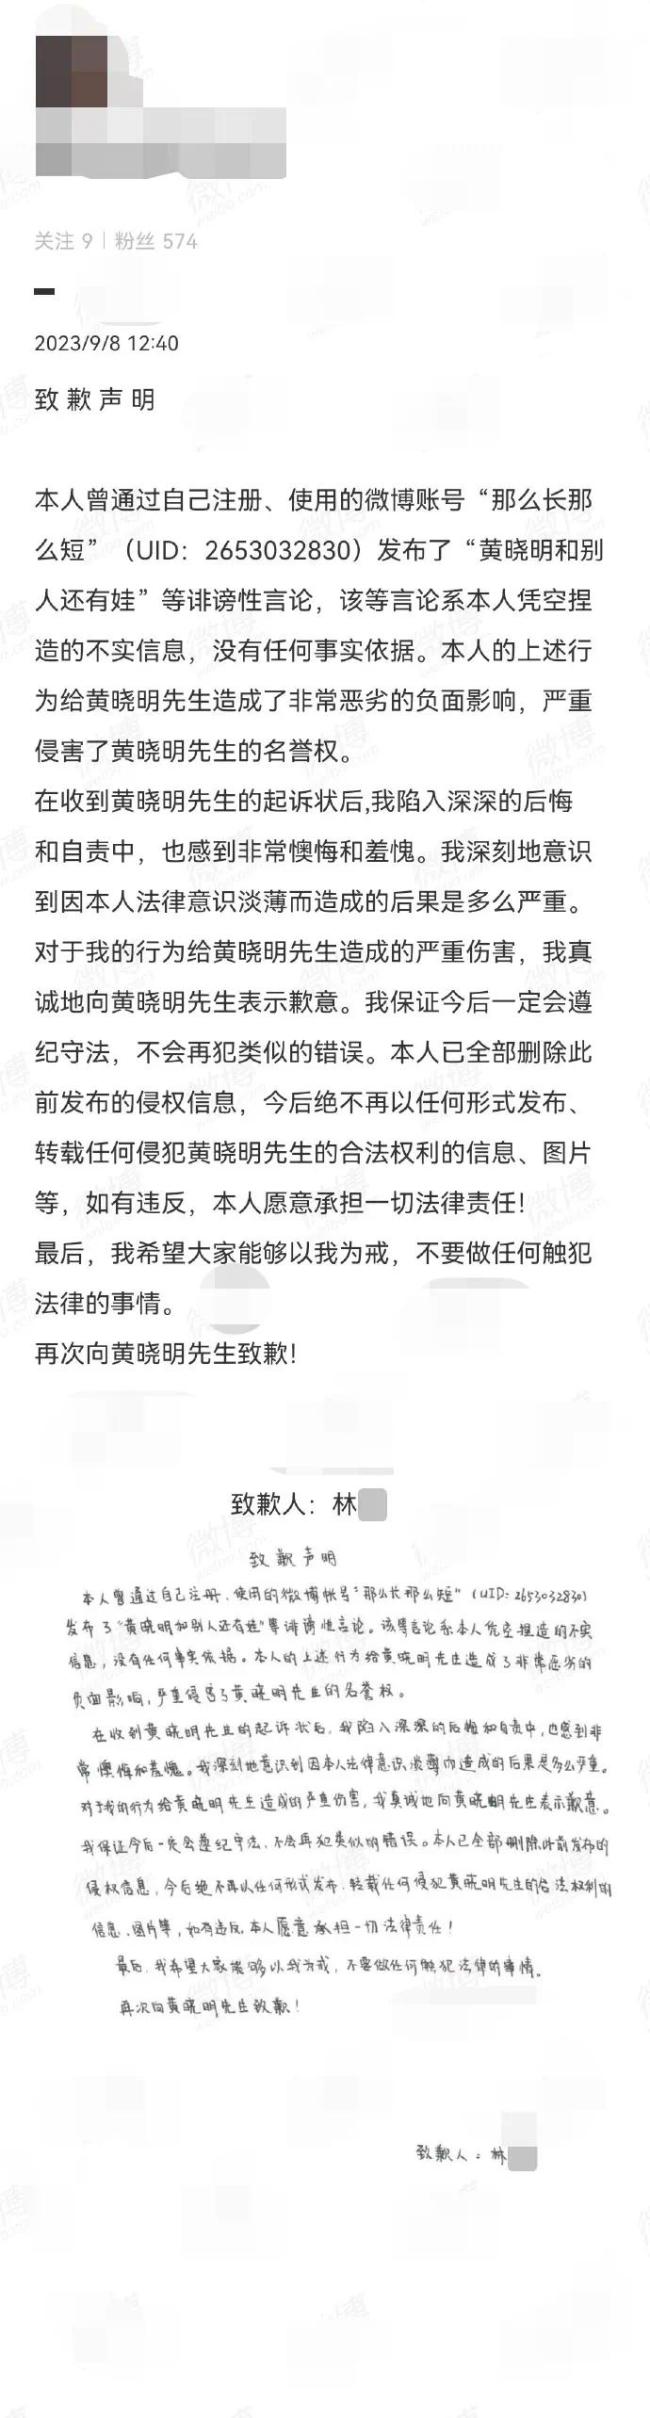 网友向黄晓明公开道歉 称此前的言论没有依据